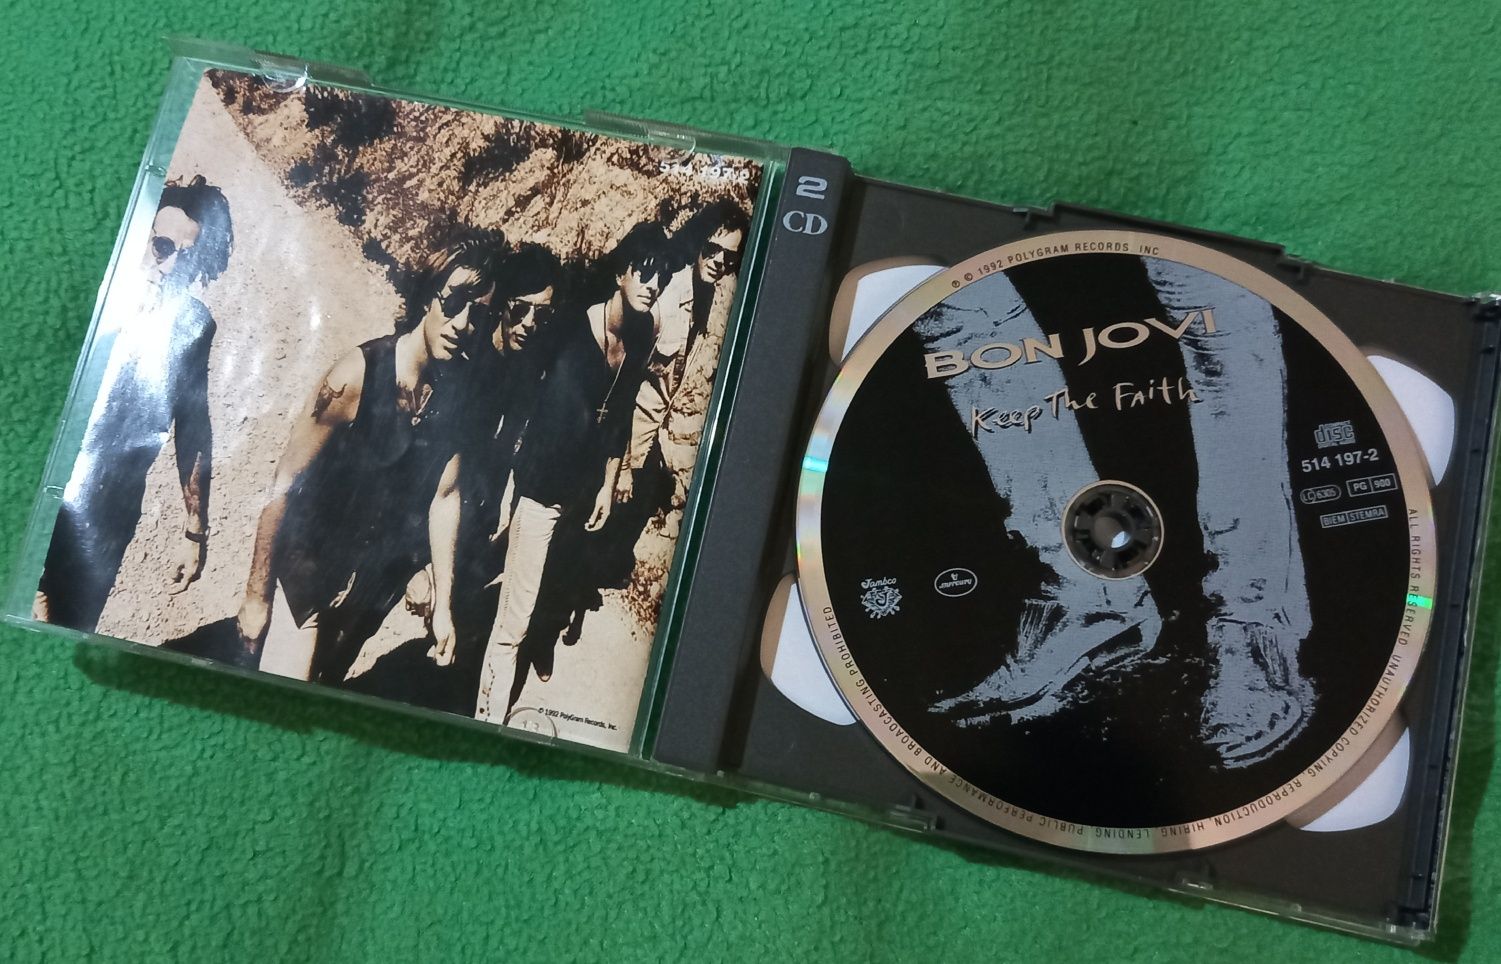 Bon Jovi Keep The Faith - Duplo CD + Poster